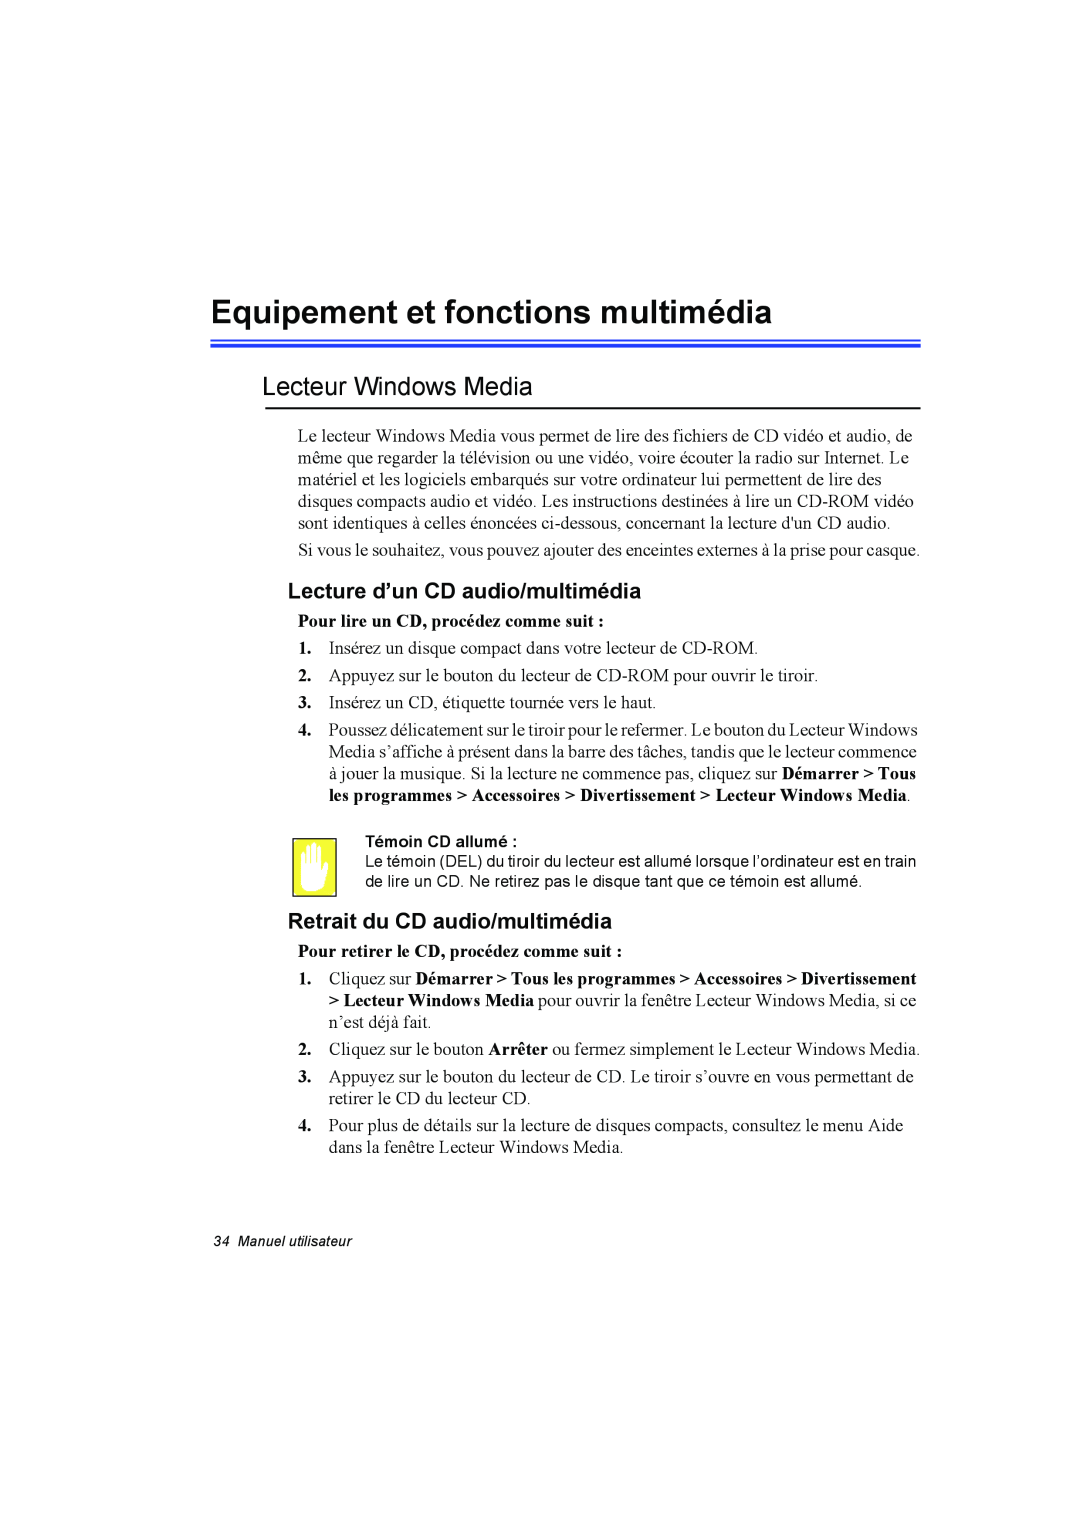 Samsung NA10DH00HT/SEF manual Equipement et fonctions multimédia, Lecteur Windows Media, Lecture d’un CD audio/multimédia 